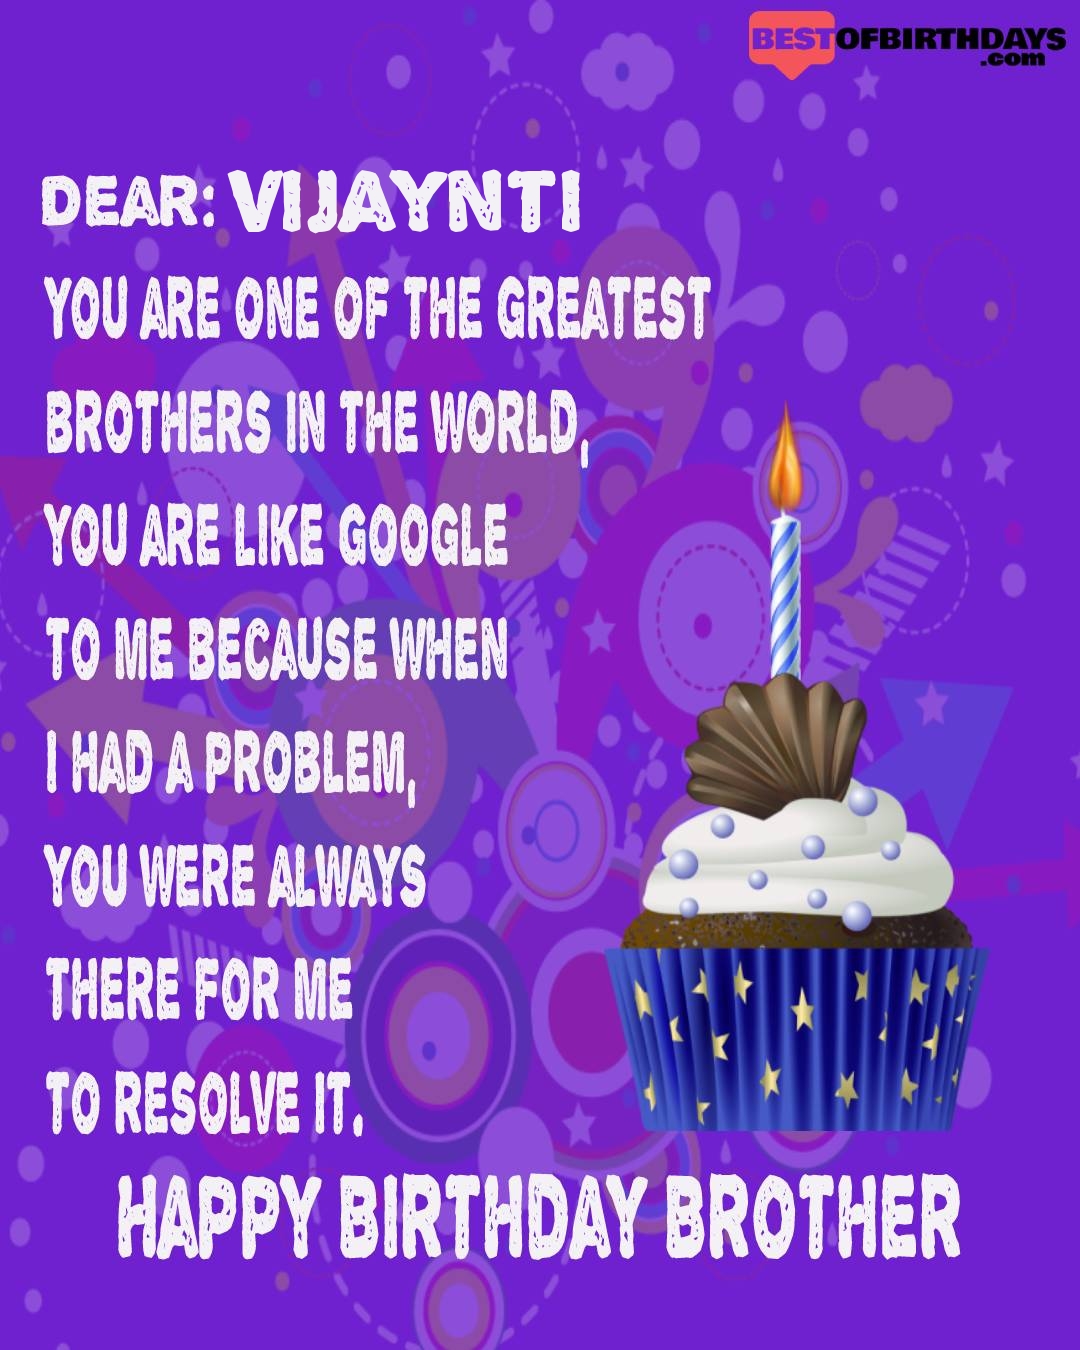 Happy birthday vijaynti bhai brother bro